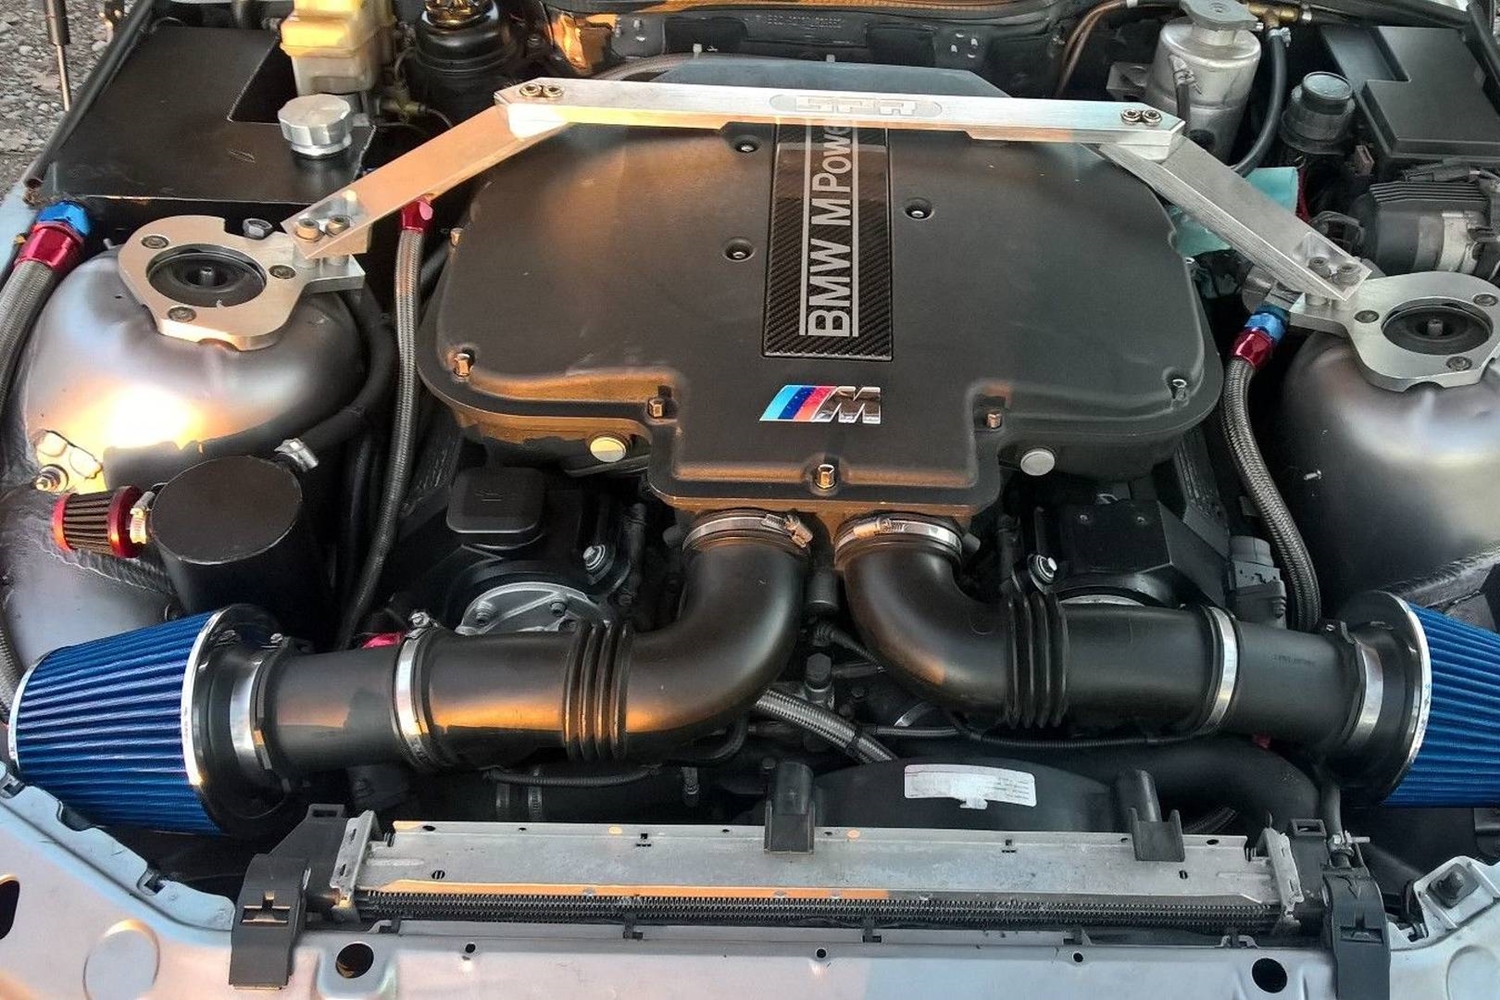 Meglepő motor került ebbe a Z3-as BMW-be 1